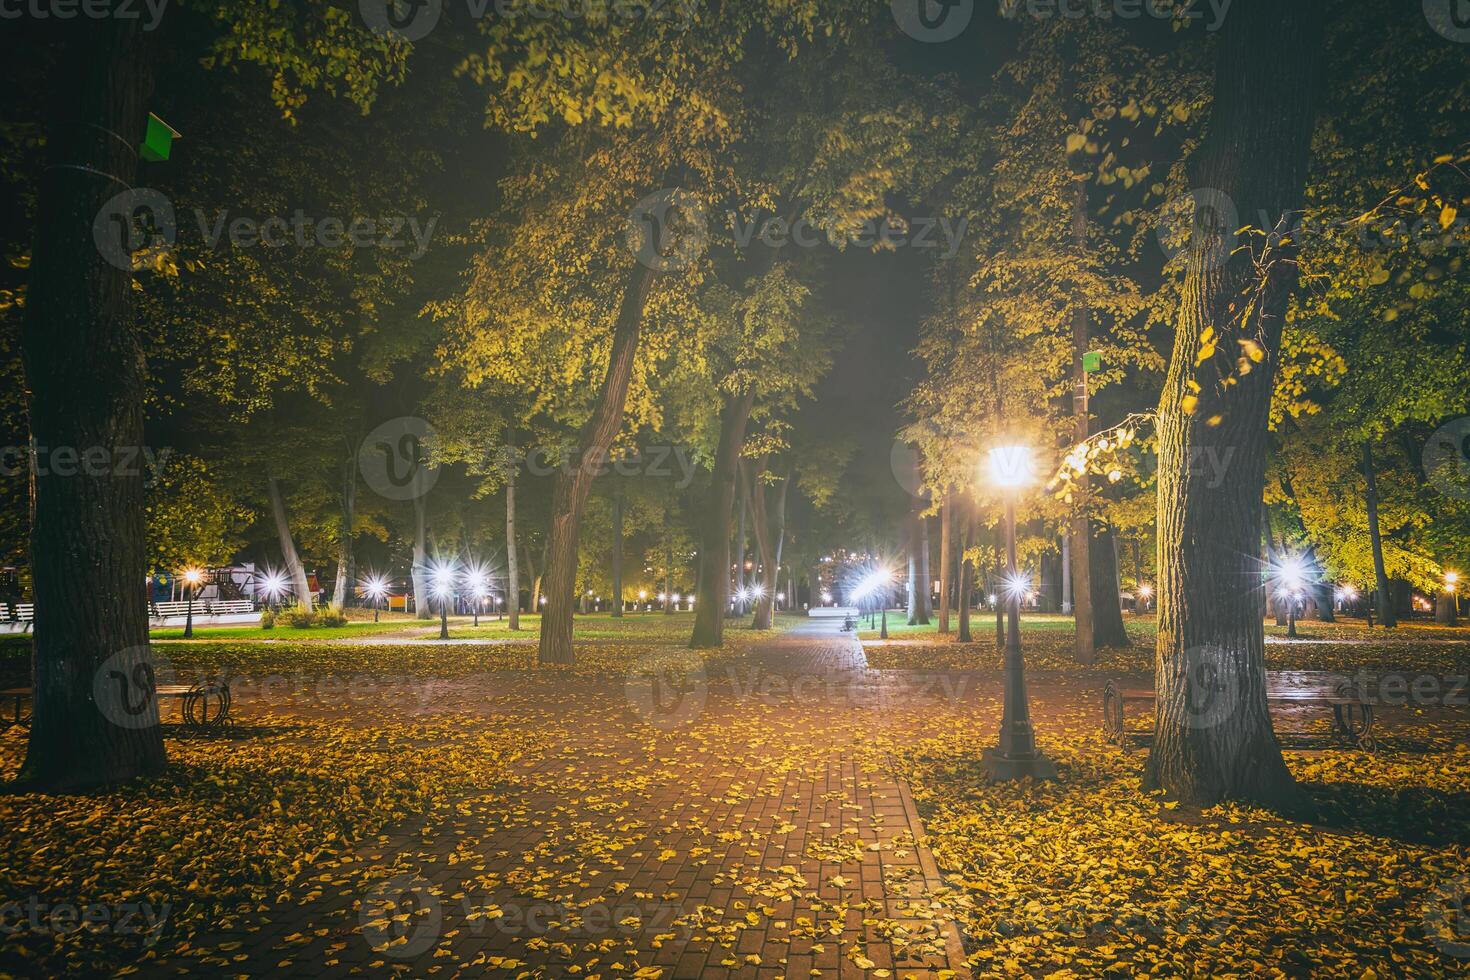 nacht park in herfst met gedaald geel bladeren.stad nacht park in gouden herfst met lantaarns, gedaald geel bladeren en esdoorn- bomen. wijnoogst film stijlvol. foto